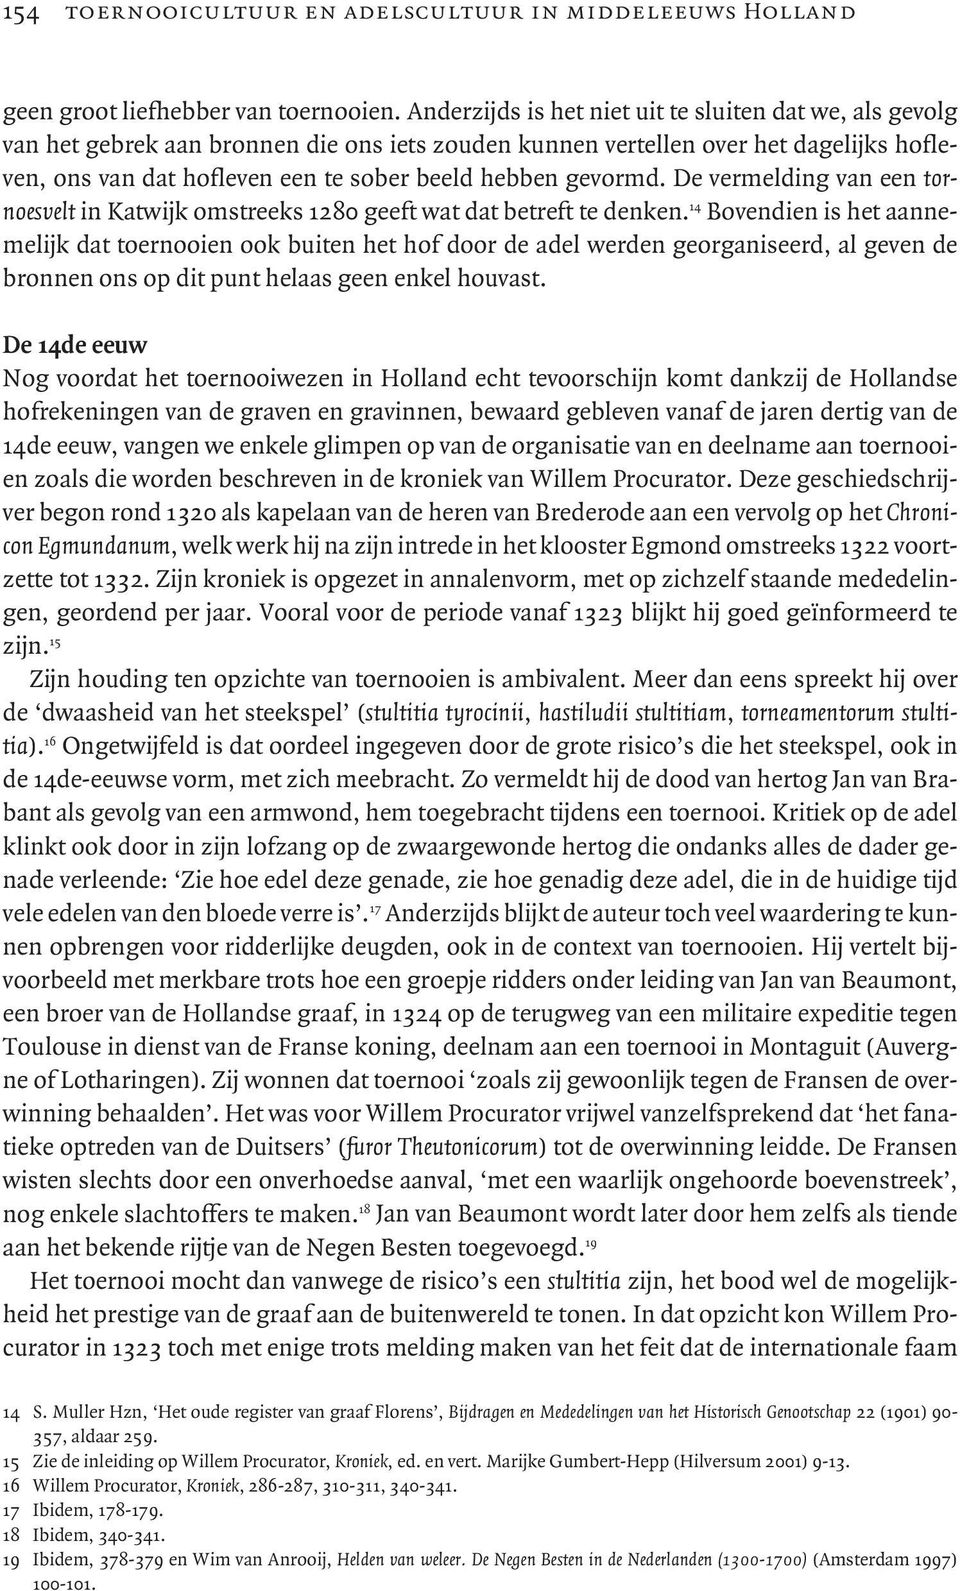 gevormd. De vermelding van een tornoesvelt in Katwijk omstreeks 1280 geeft wat dat betreft te denken.